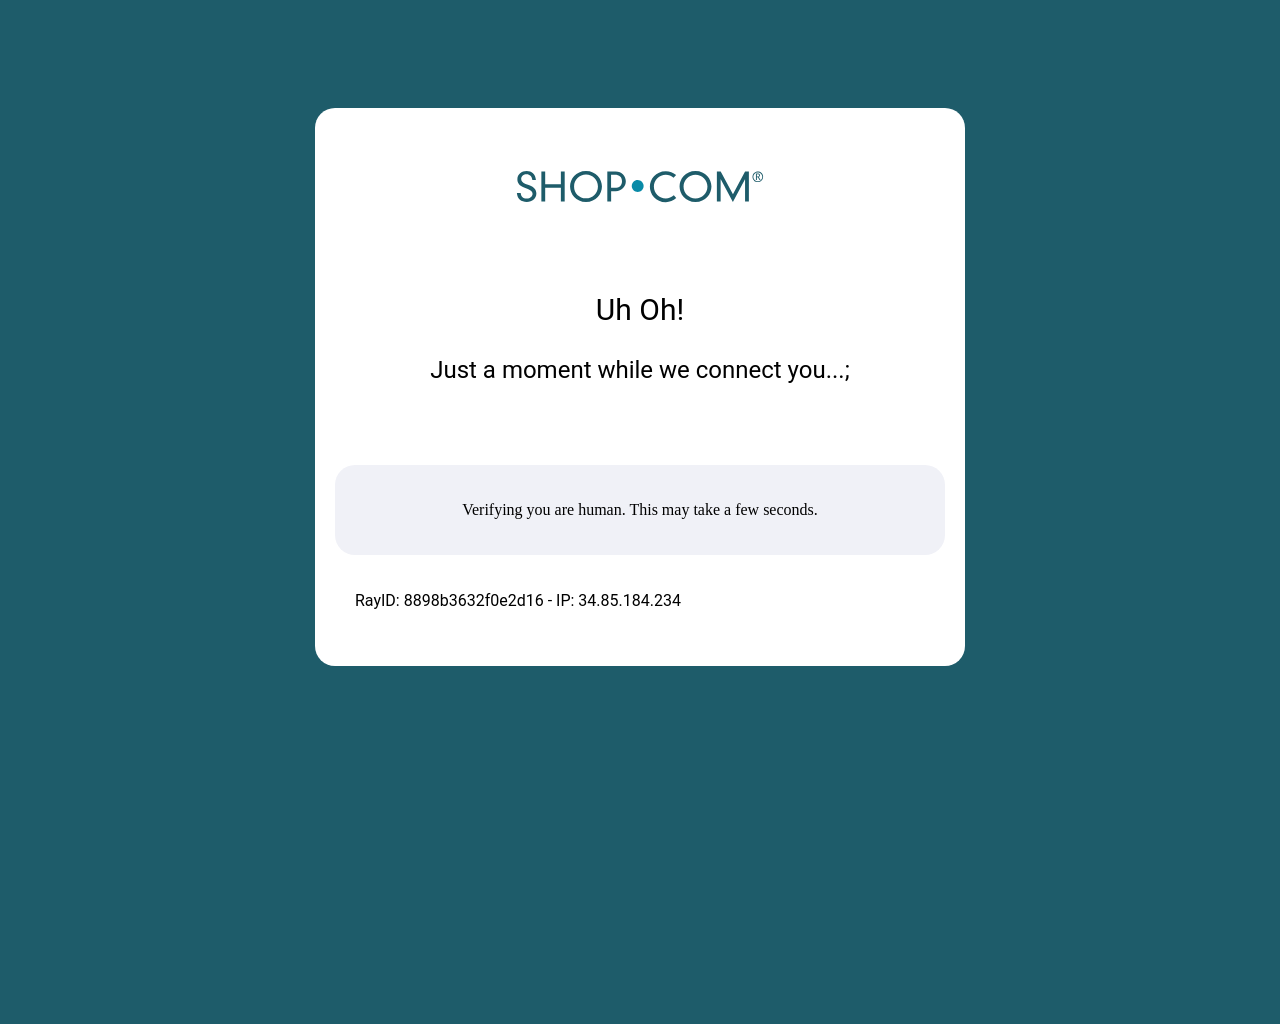 shop.com